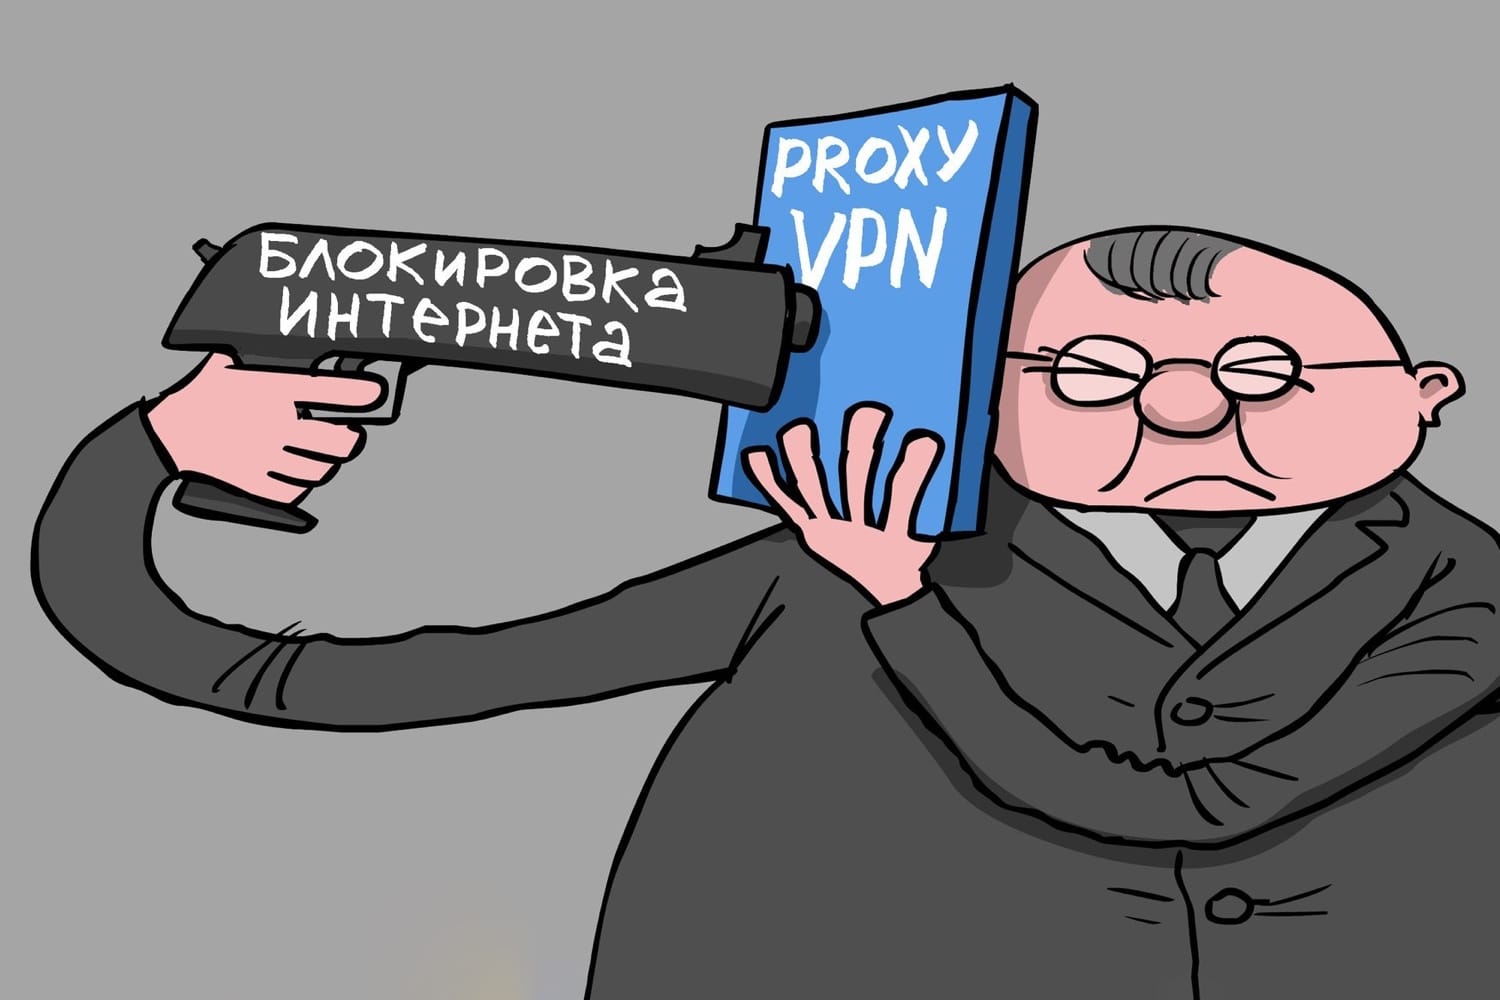 Используешь VPN или прокси в России? – заплати огромный штраф!